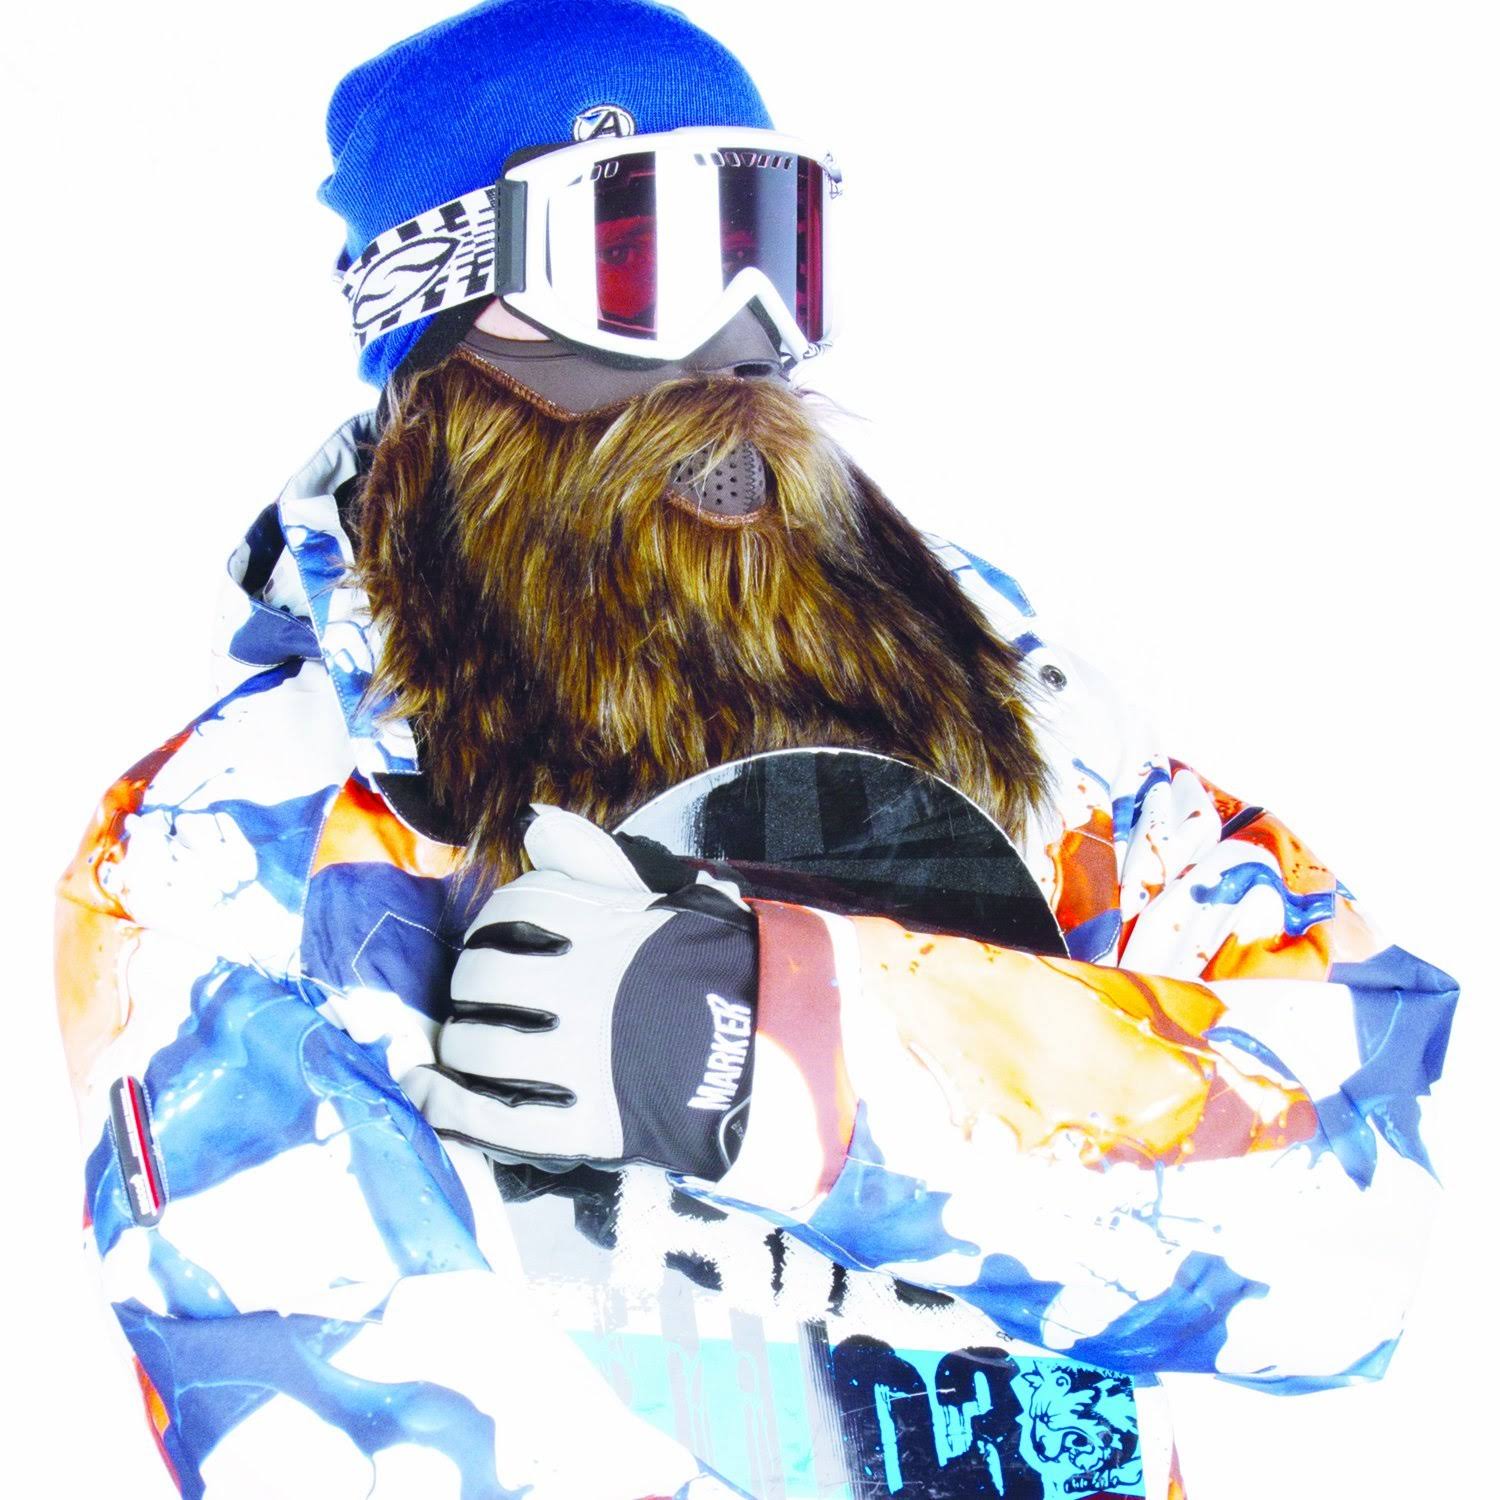 Beardski Prospector Ski Mask - 9.7" x 9.4" x 2.4"